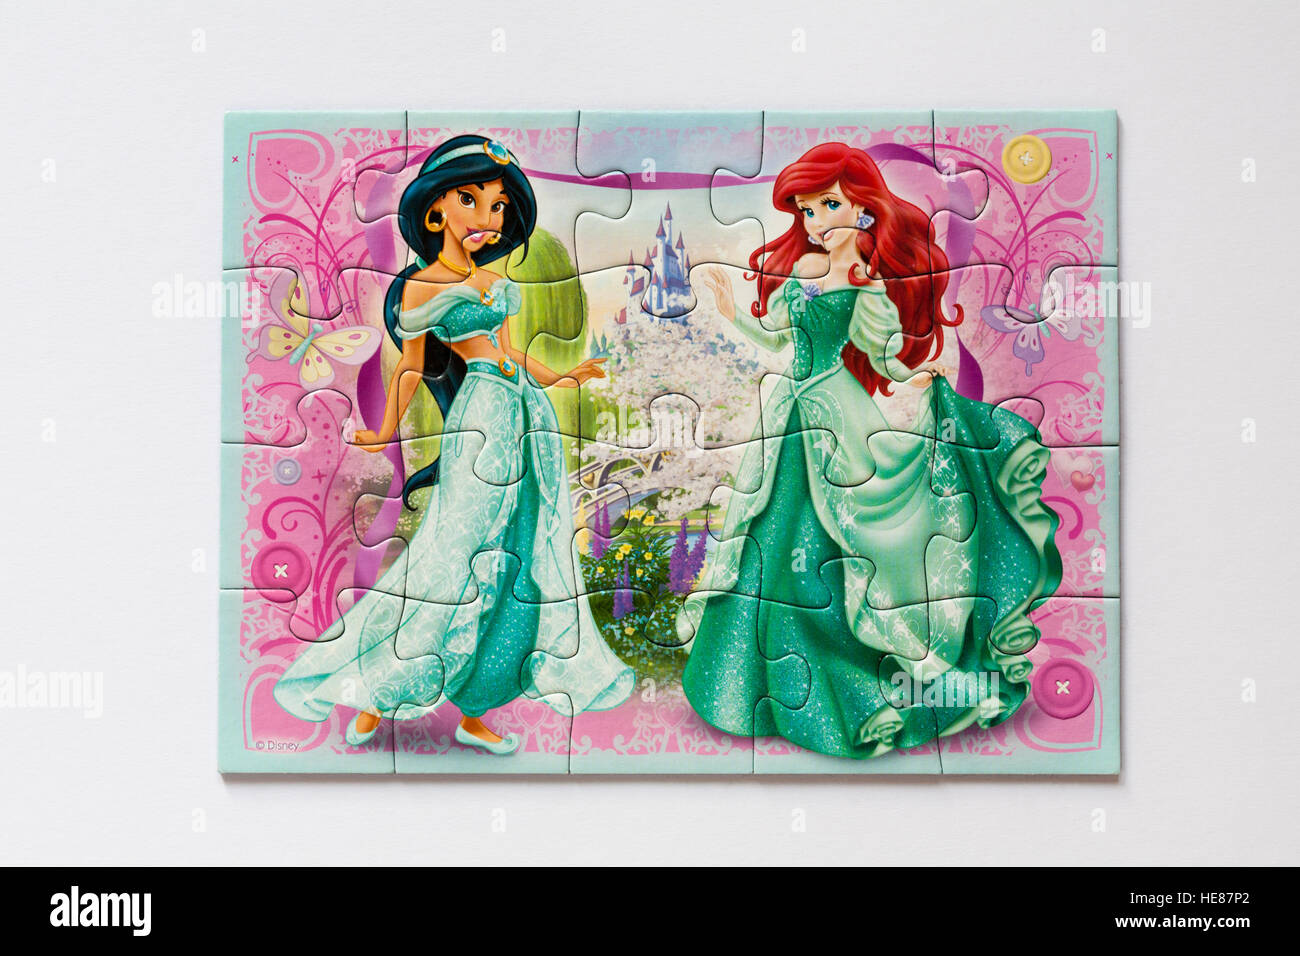 Princesas Disney rompecabezas aislado sobre fondo blanco Fotografía de Alamy